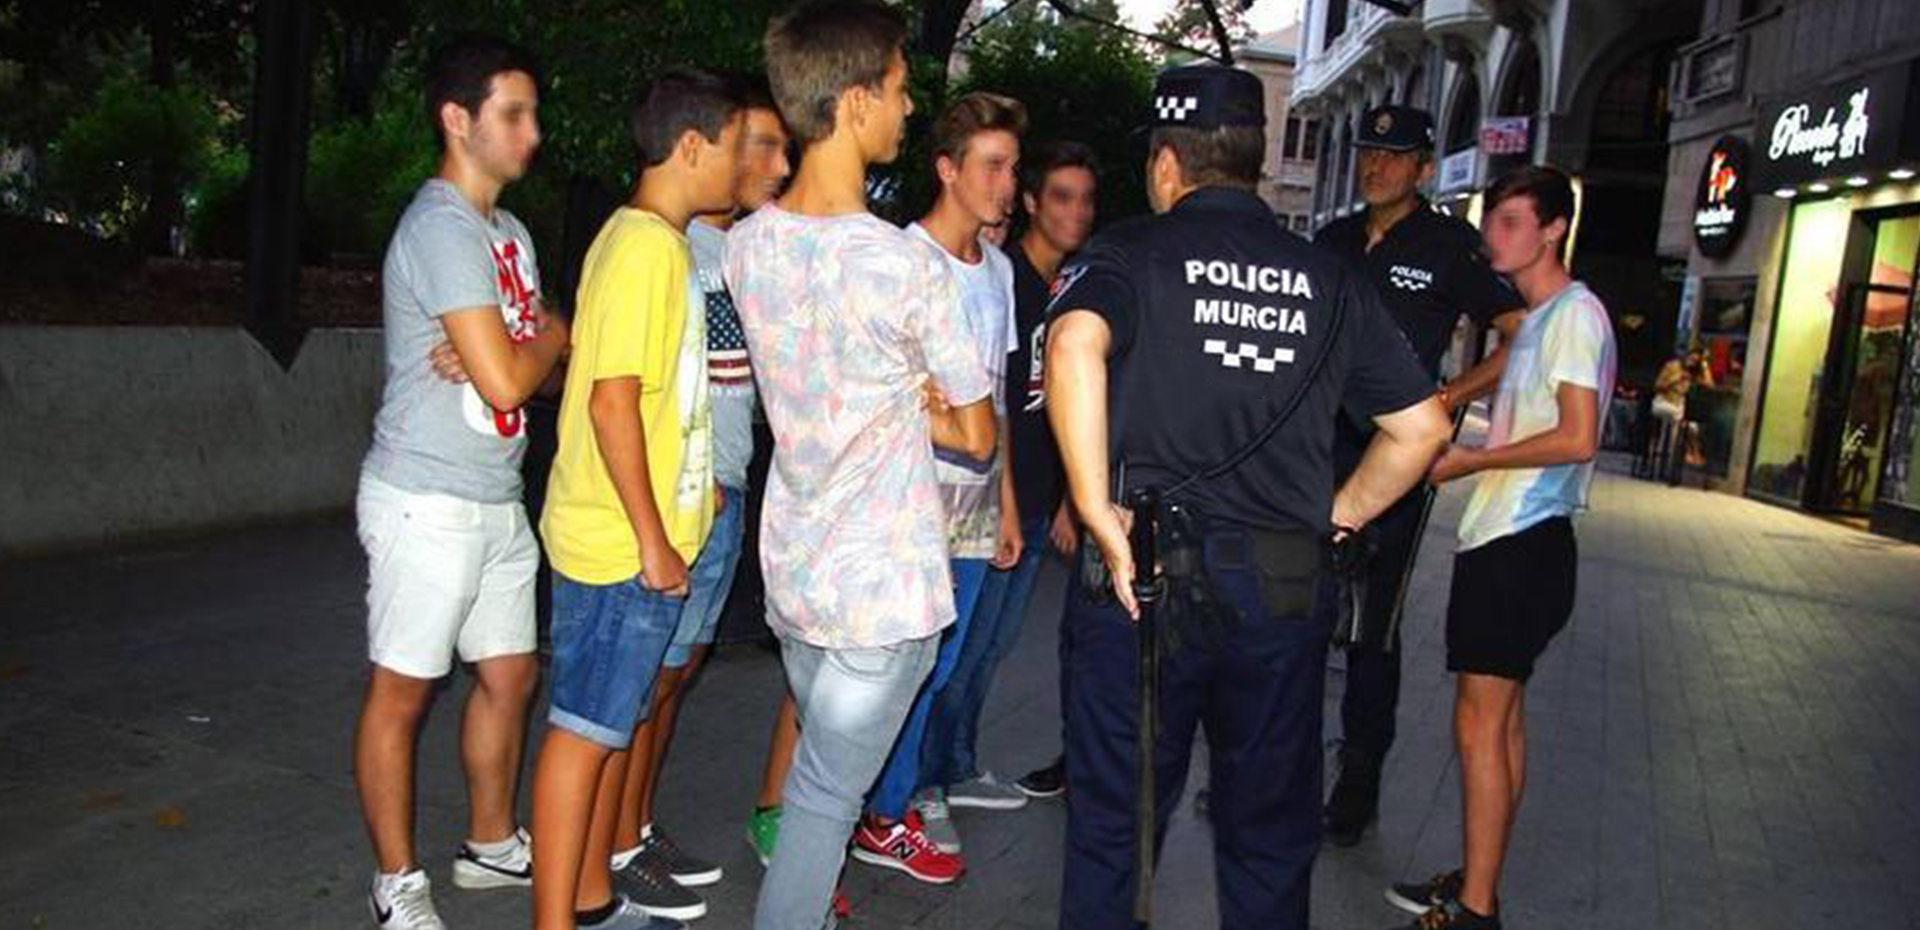 Agentes de policía conversando con un grupo de jovenes.